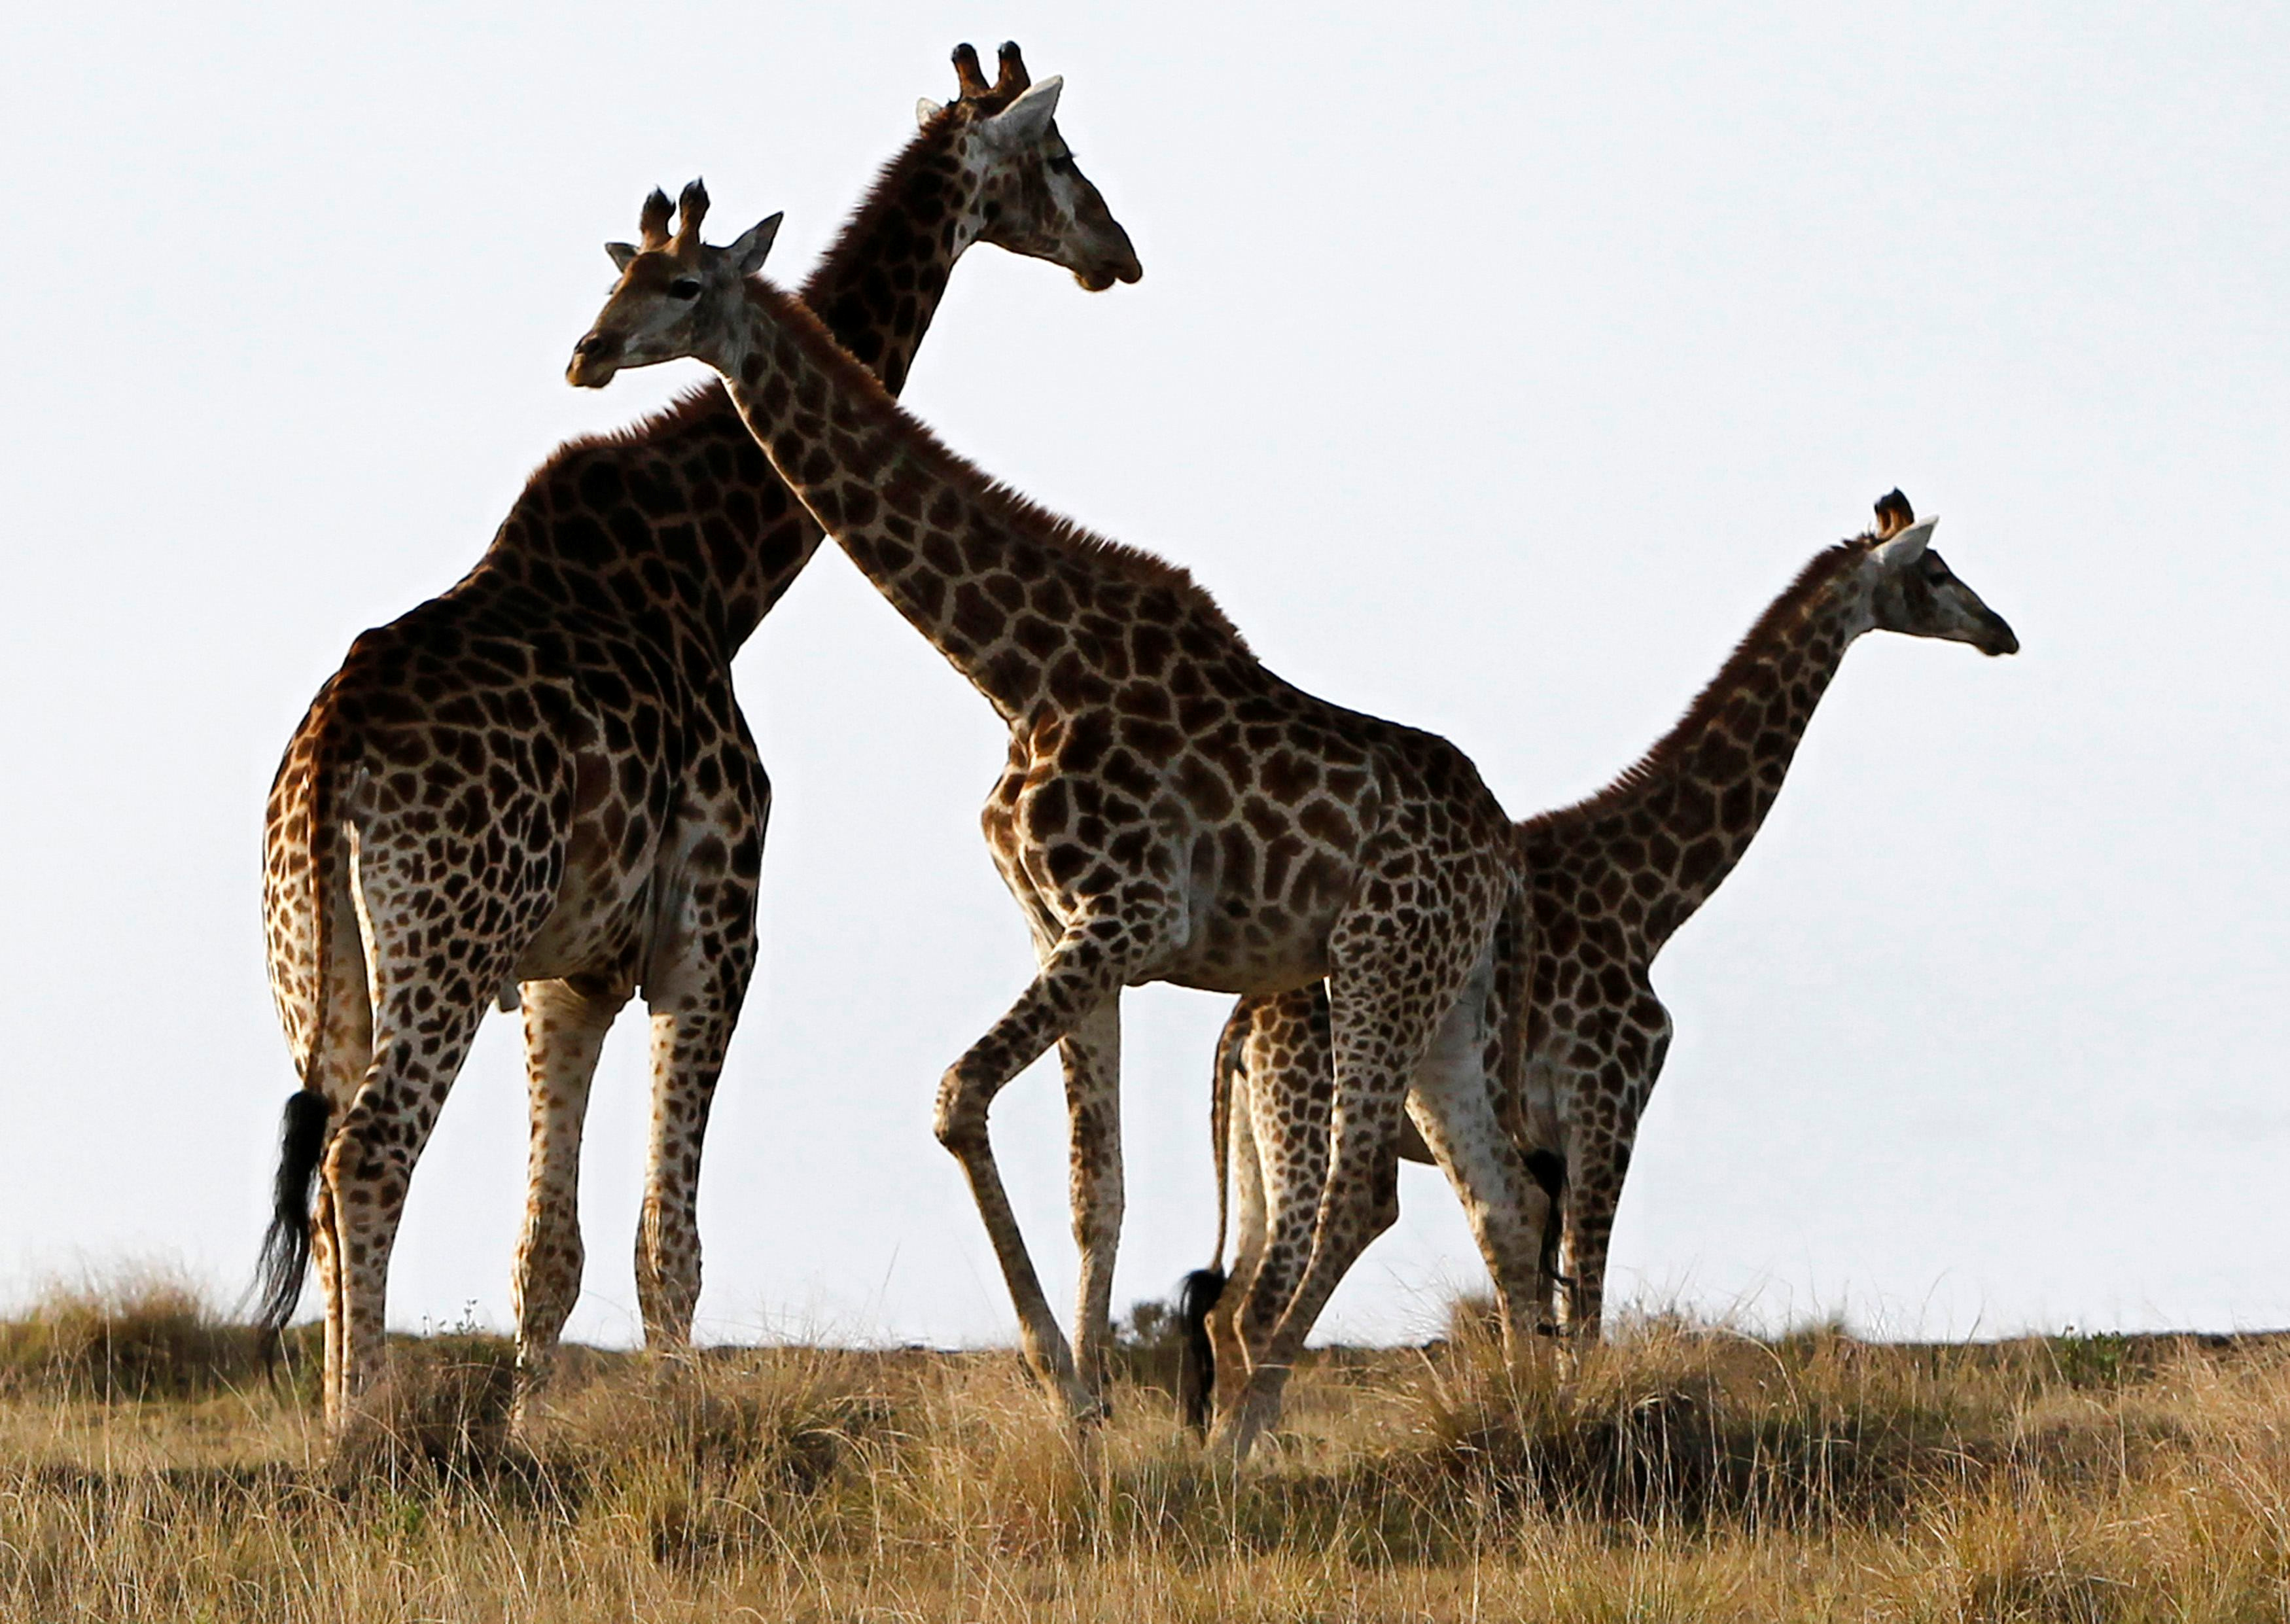 “Safaris virtuales” de Sudáfrica animan la cuarentena con chacales y cachorros de leopardo